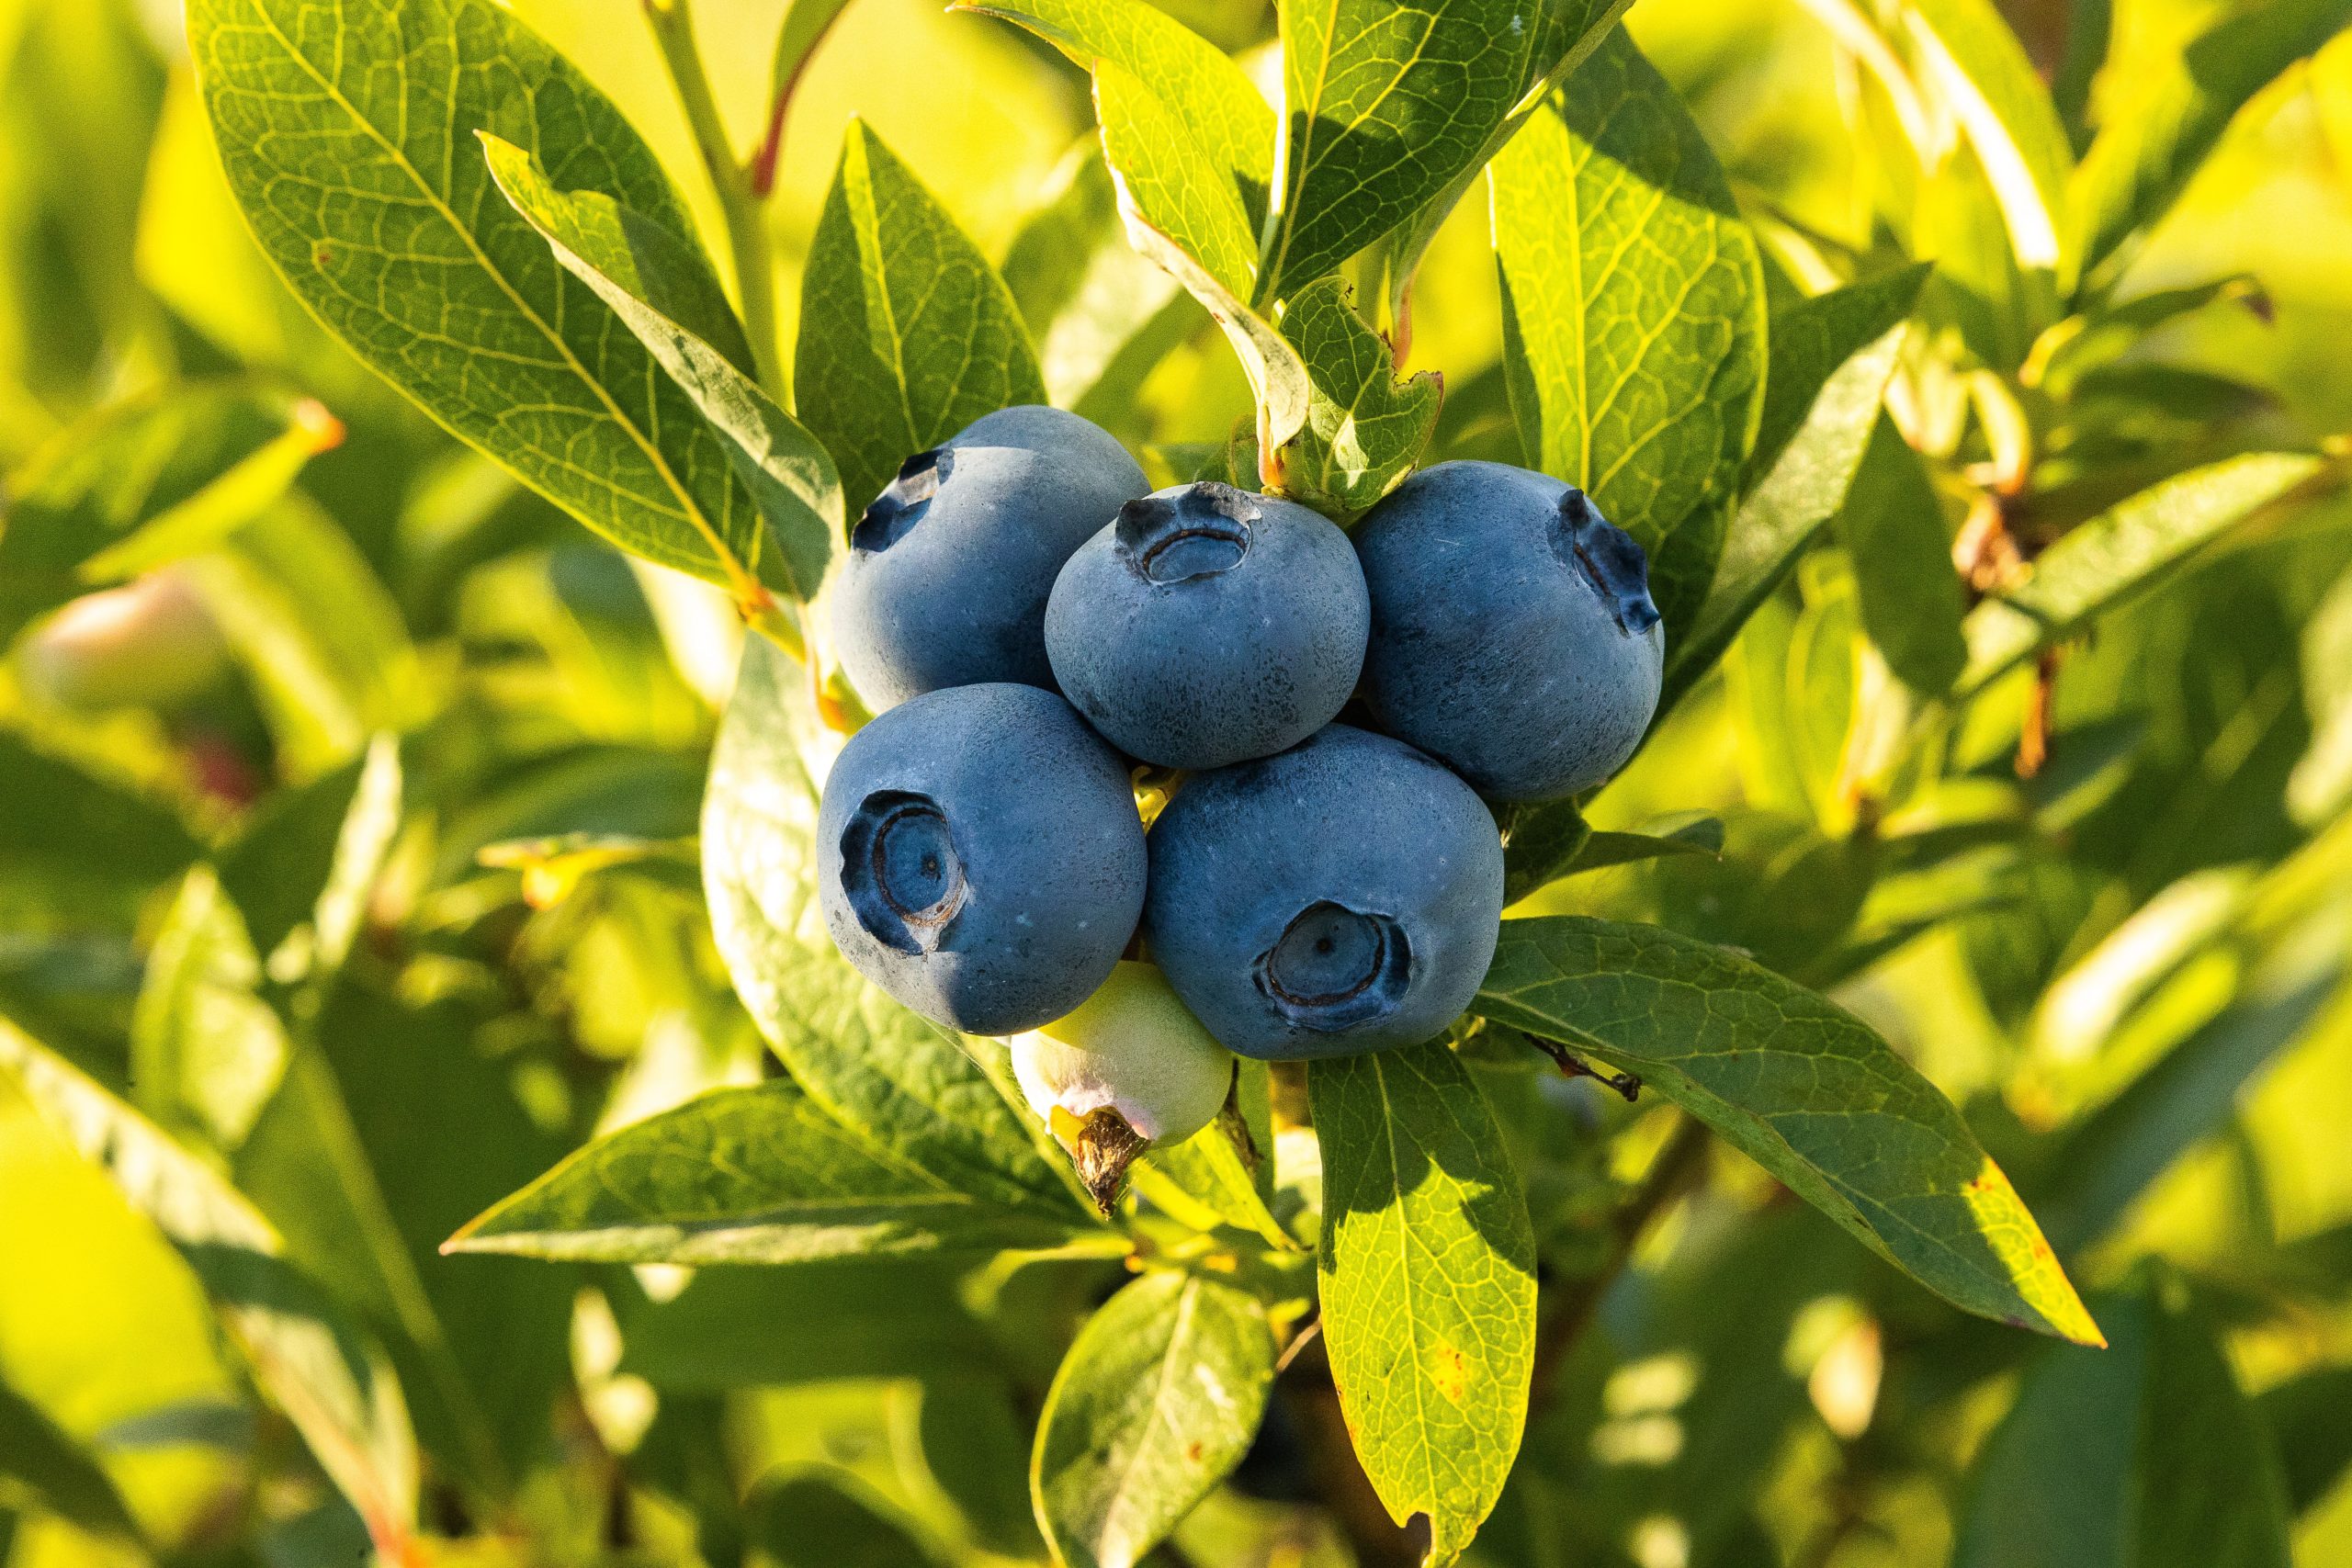 blueberry bush cousins